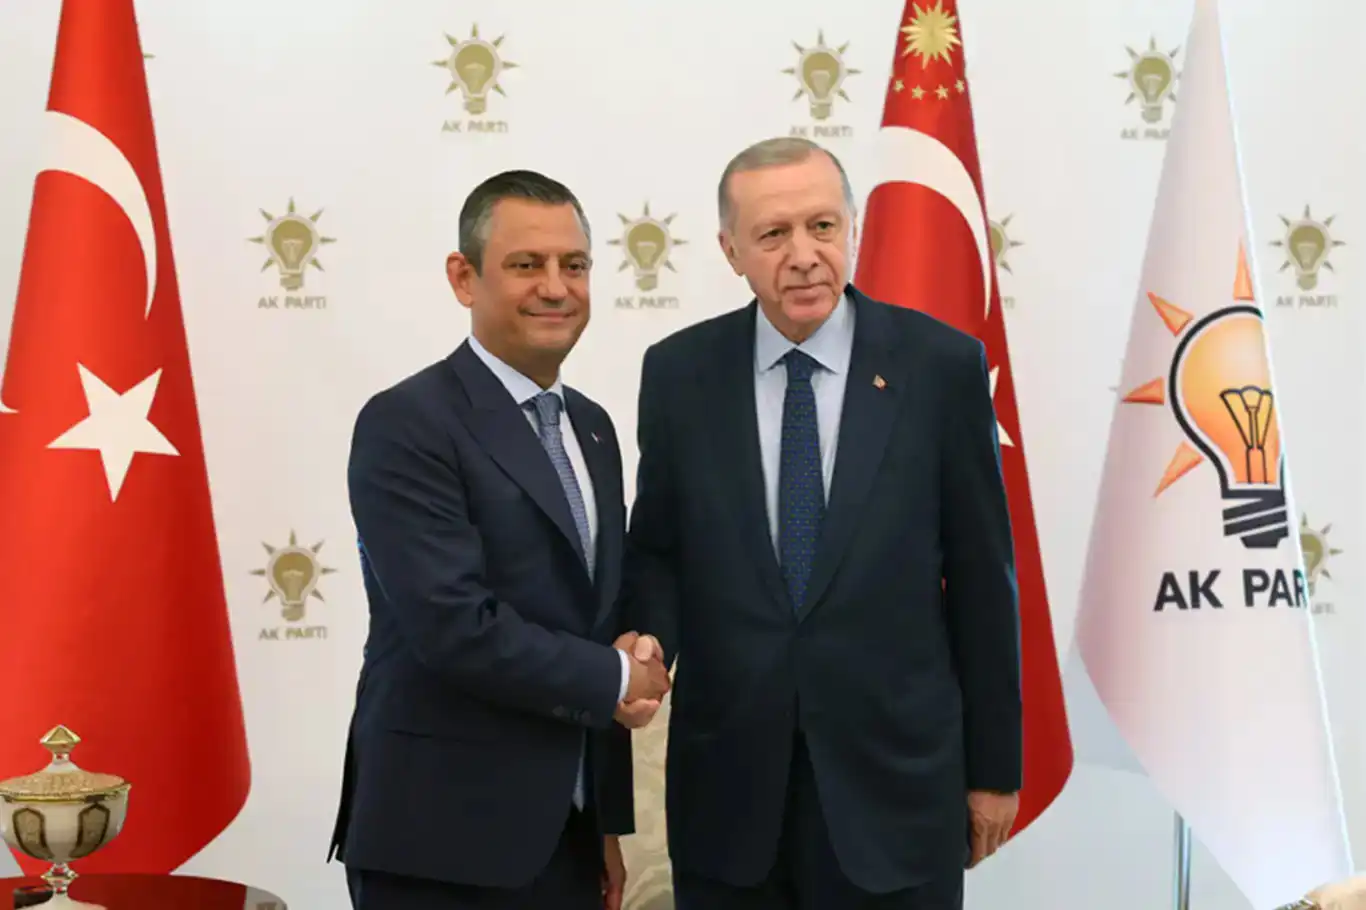 الرئيس التركي أردوغان يستضيف رئيس أكبر أحزاب المعارضة